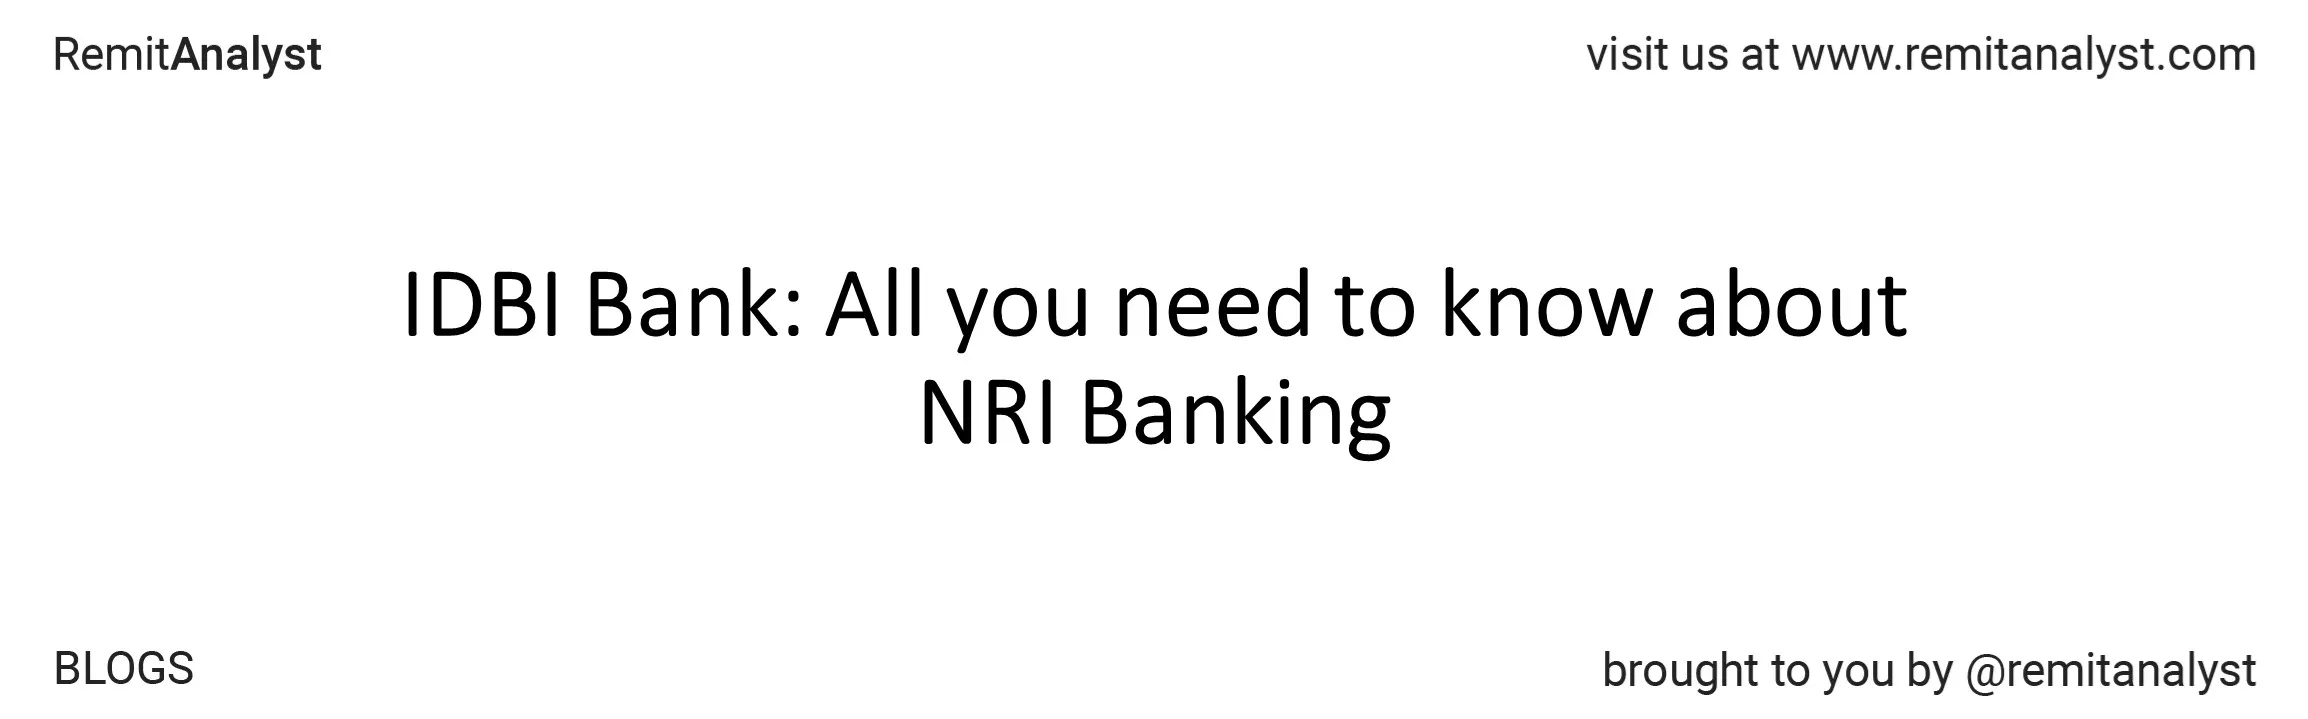 idbi-bank-nri-services-title